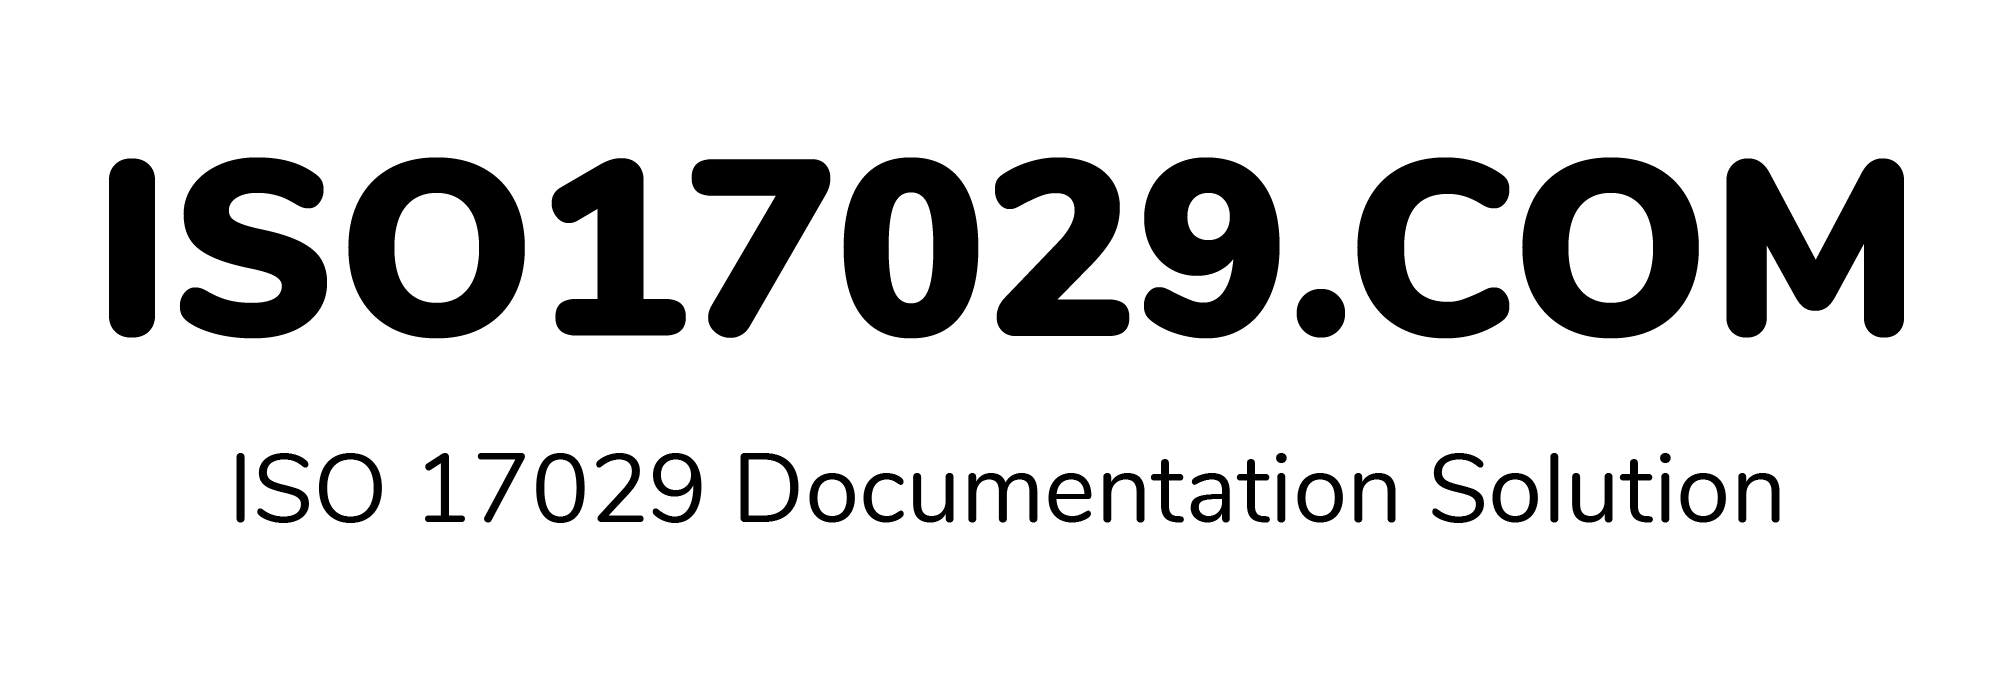 iso17029.com black logo-01